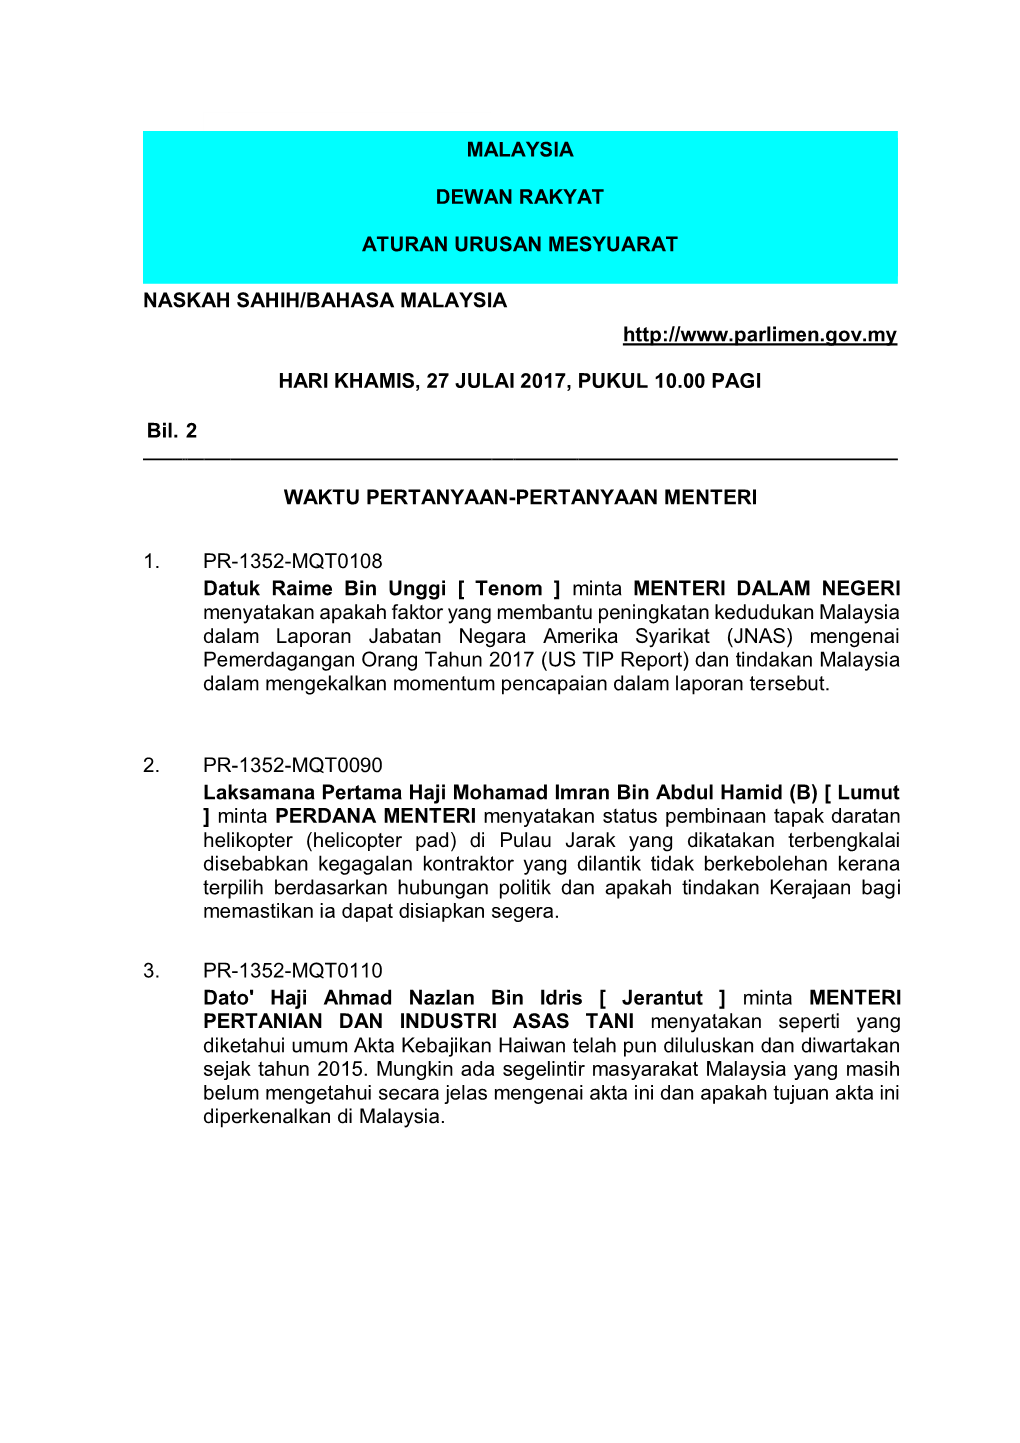 Malaysia Dewan Rakyat Aturan Urusan Mesyuarat Naskah Sahih/Bahasa Malaysia Hari Khamis, 27 Julai 2017